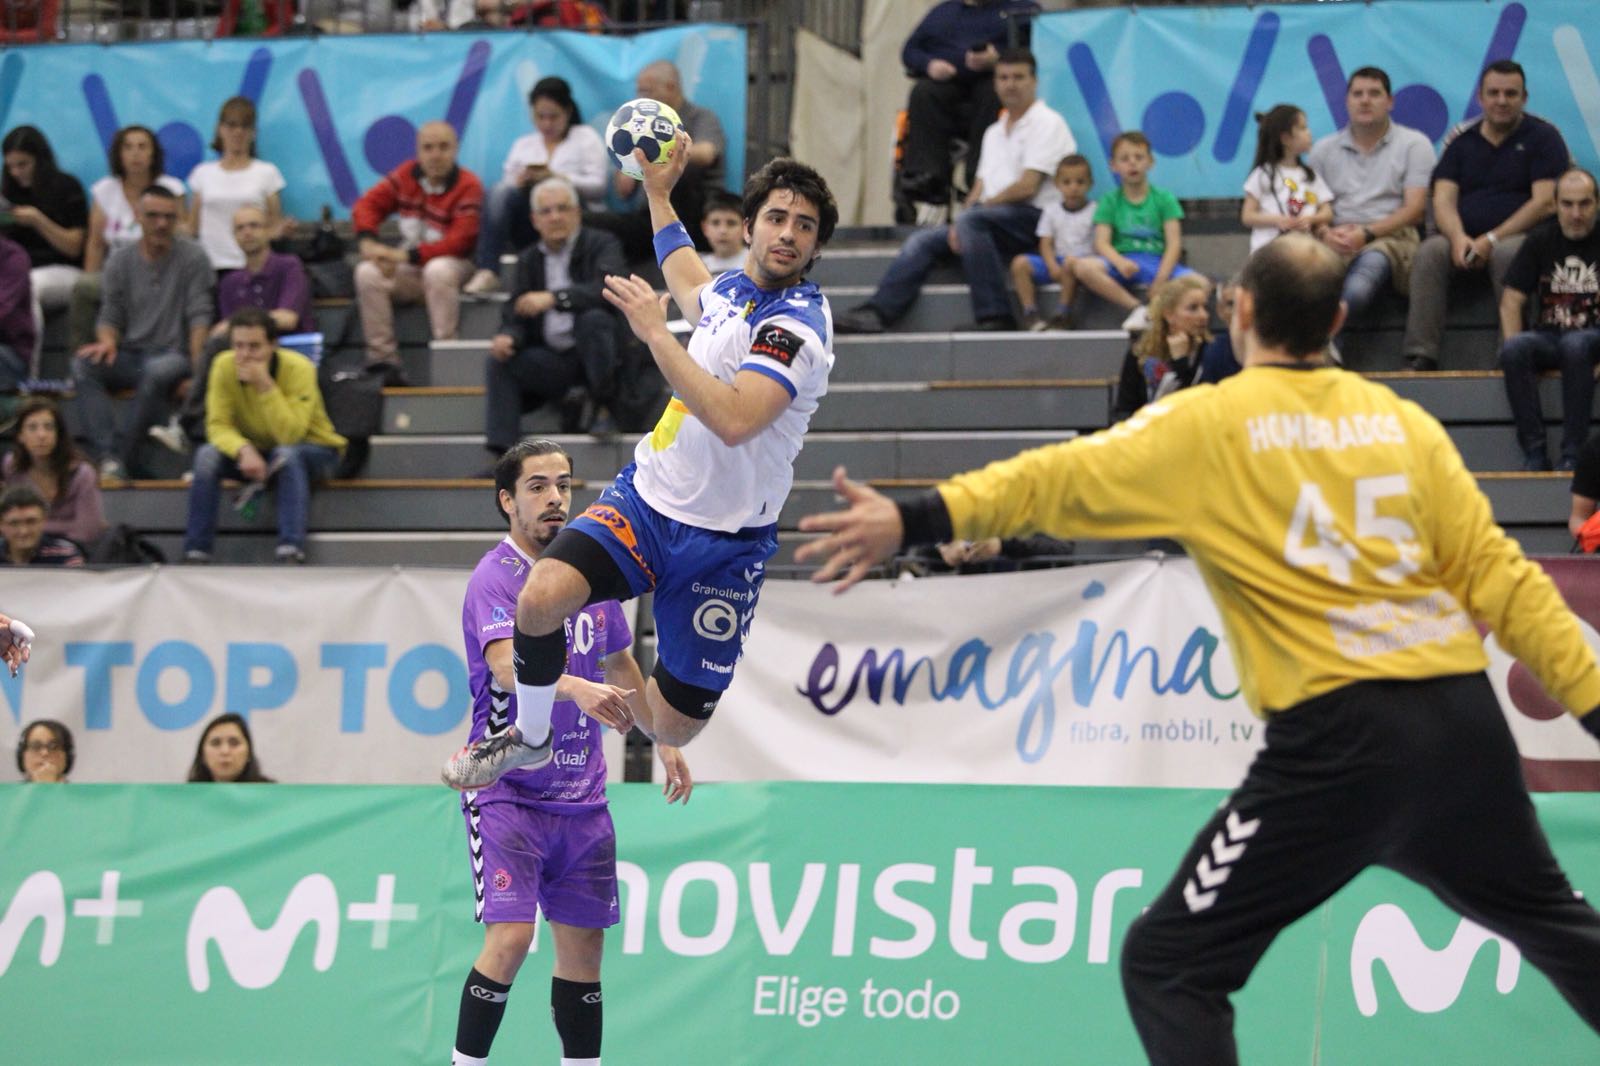 L'extrem Édgar Pérez ha acabat el partit com a màxim golejador amb vuit gols, juntament amb Adrià Figueras i Chema Márquez